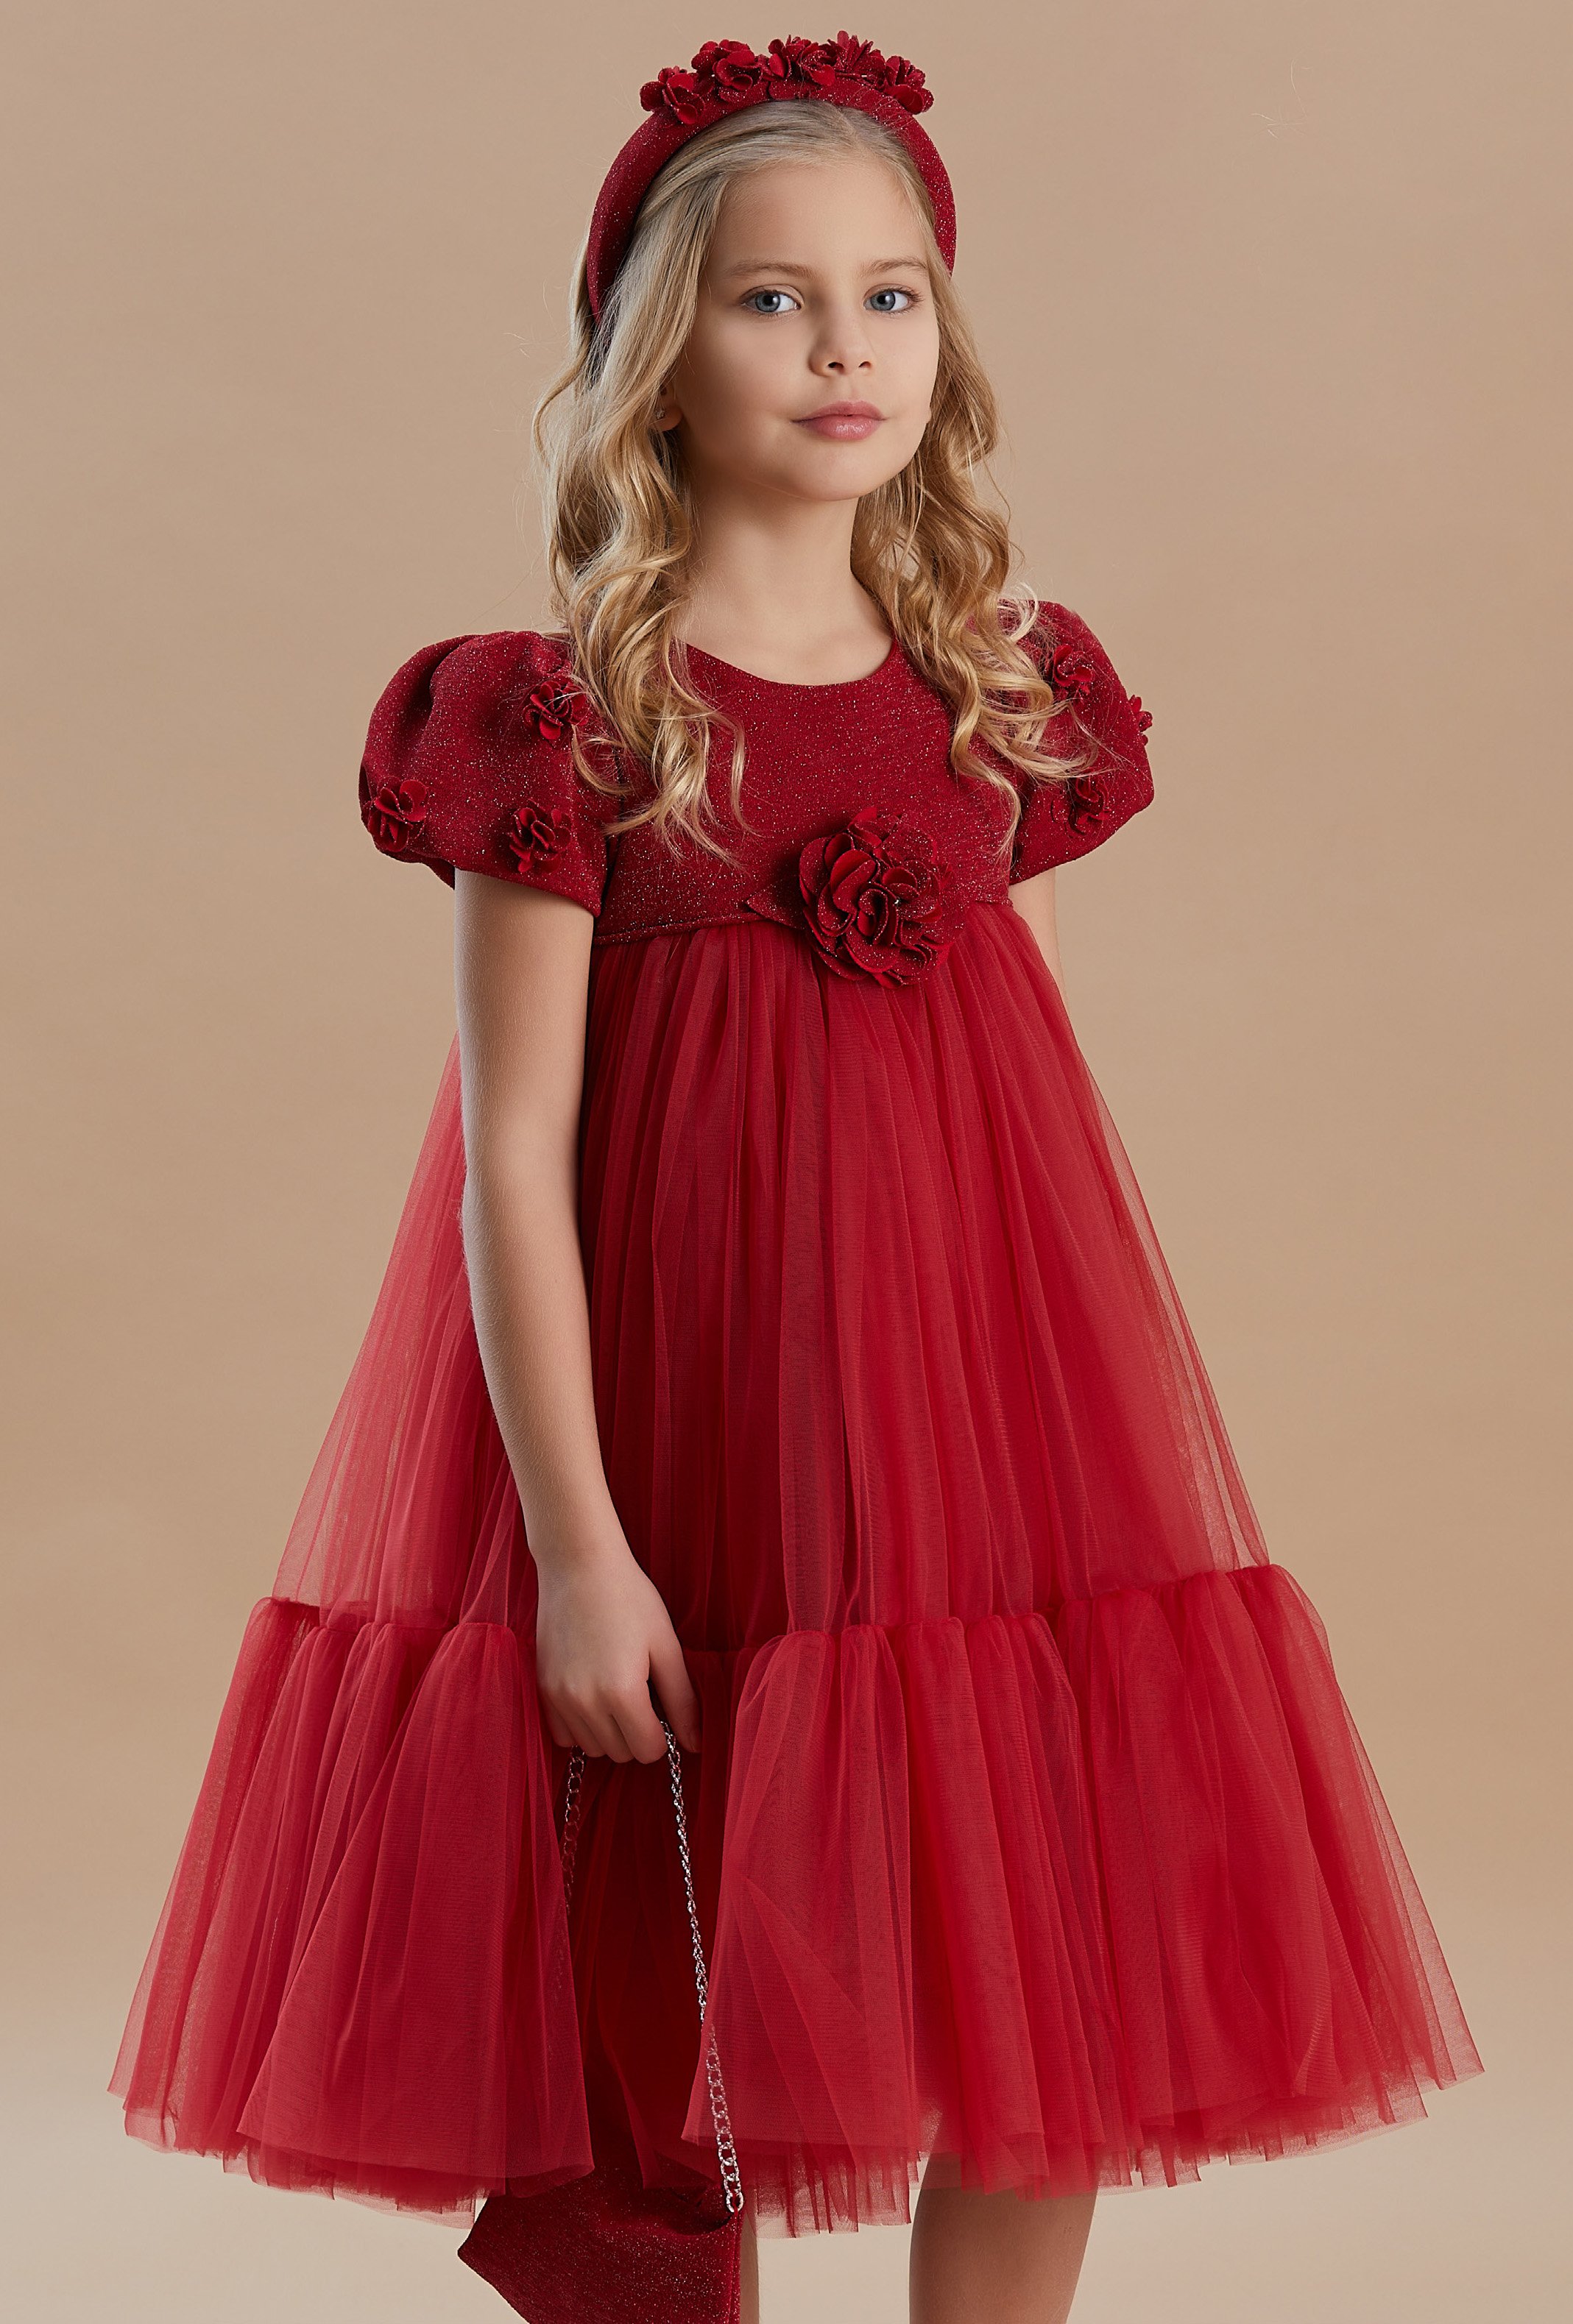 Kız Çocukları İçin Çiçek Detaylı Tül Abiye Elbiseler - Mevsimlik Koleksiyon - Kırmızı